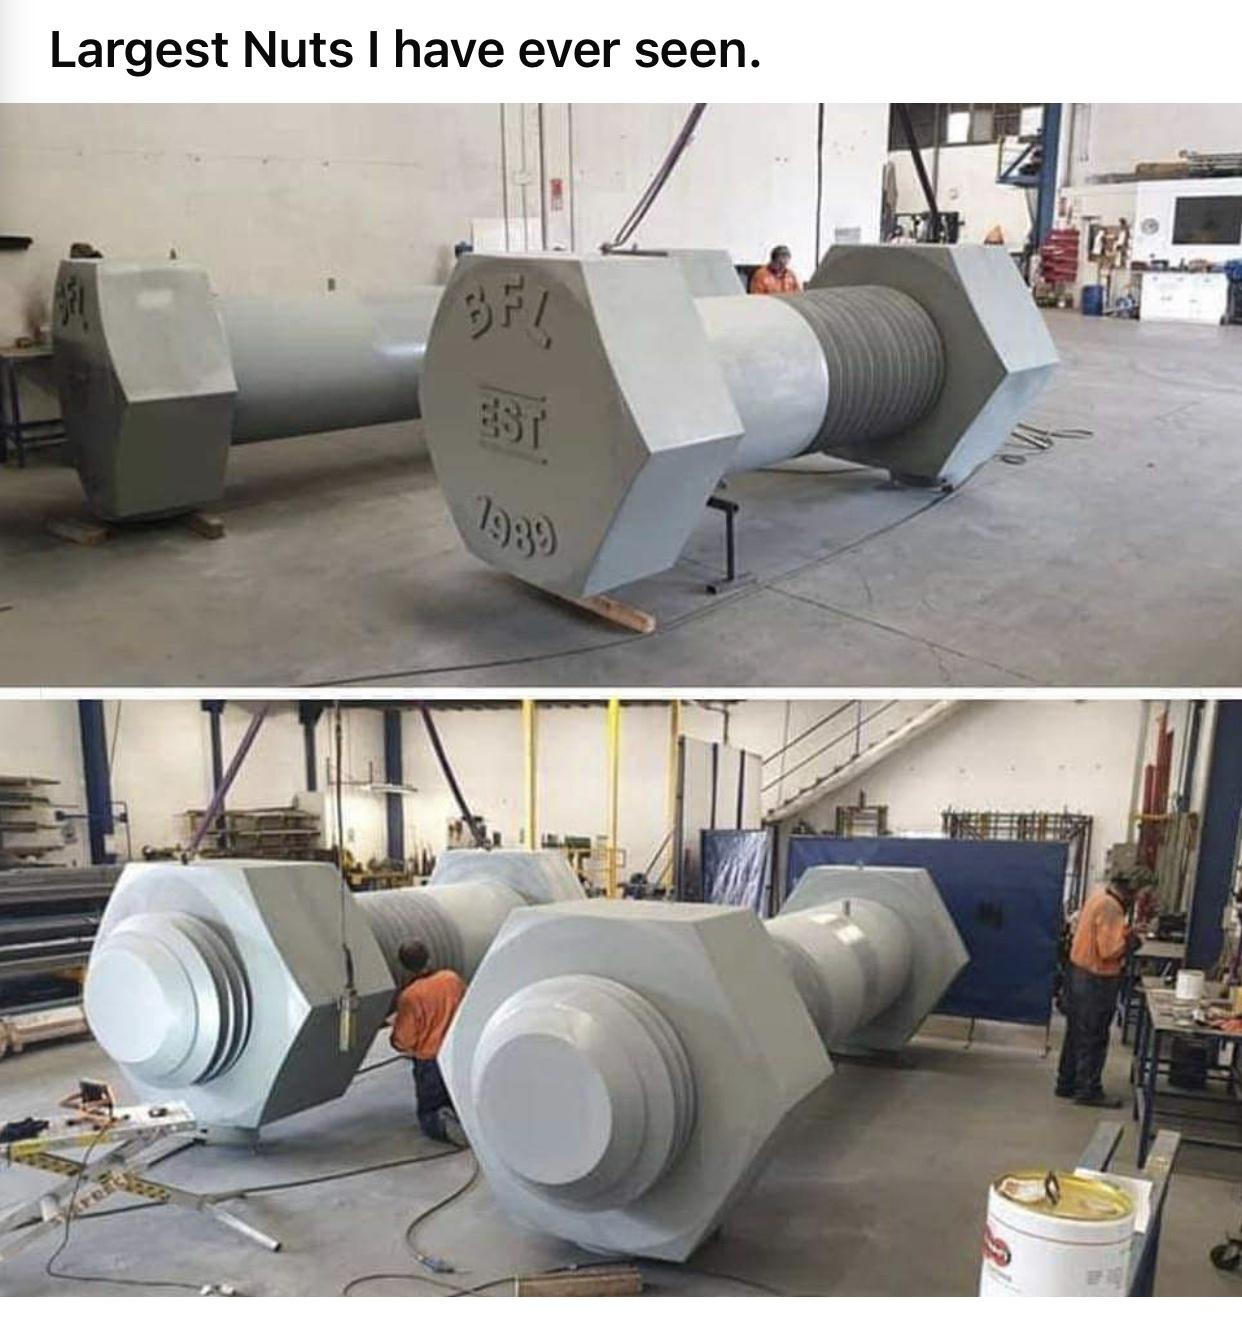 huge+nuts